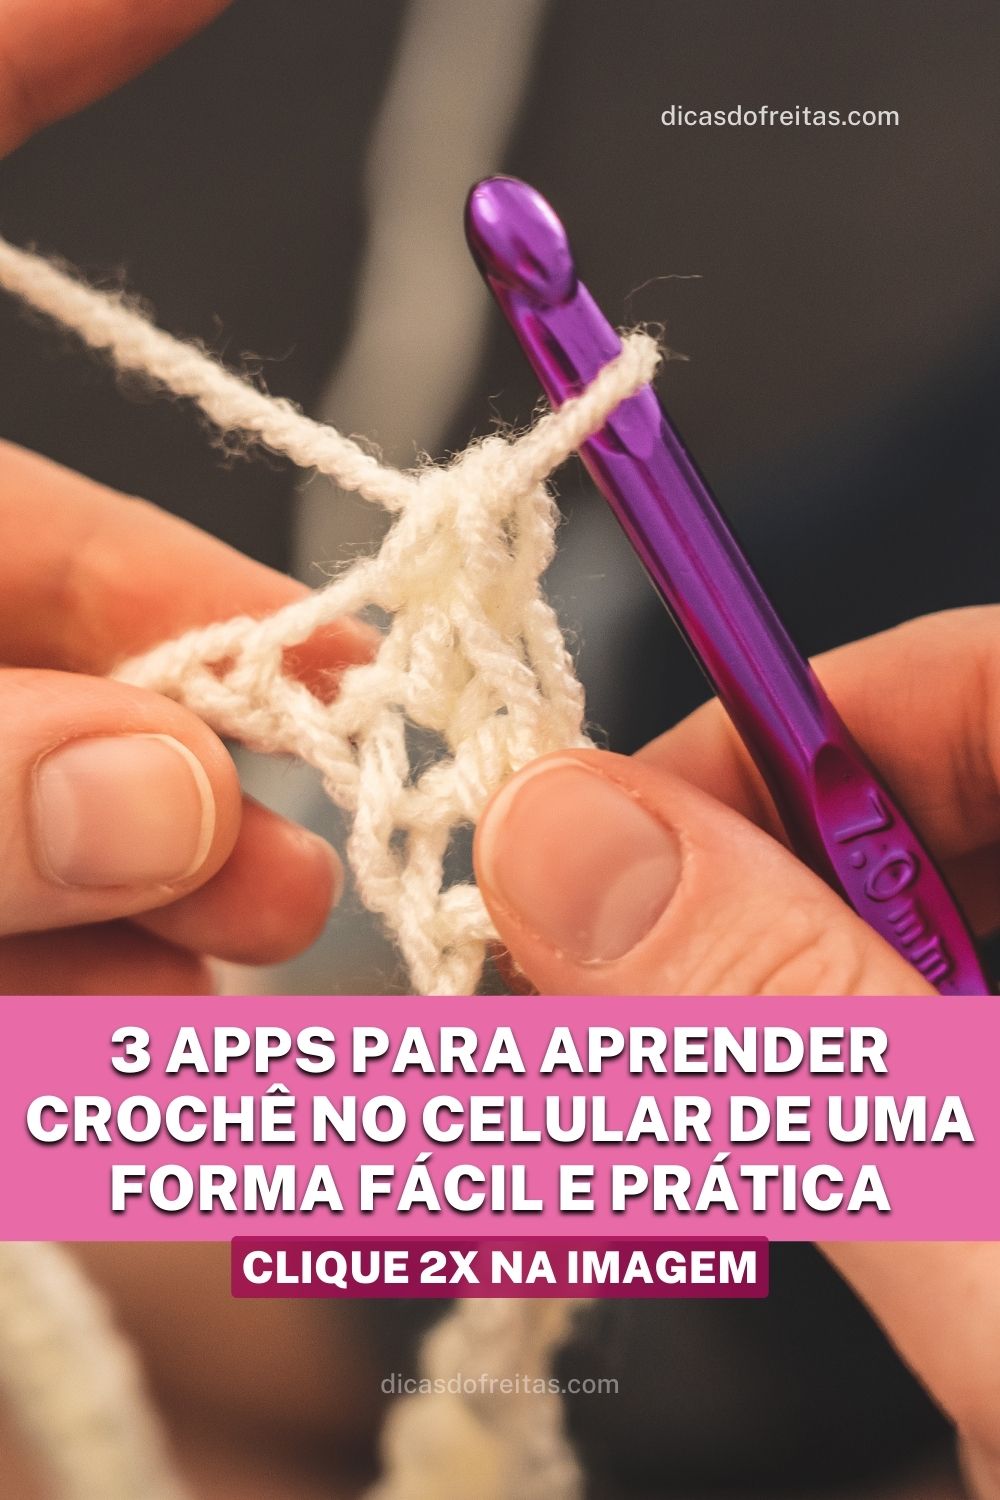 3 Apps para aprender crochê no celular de uma forma fácil e prática